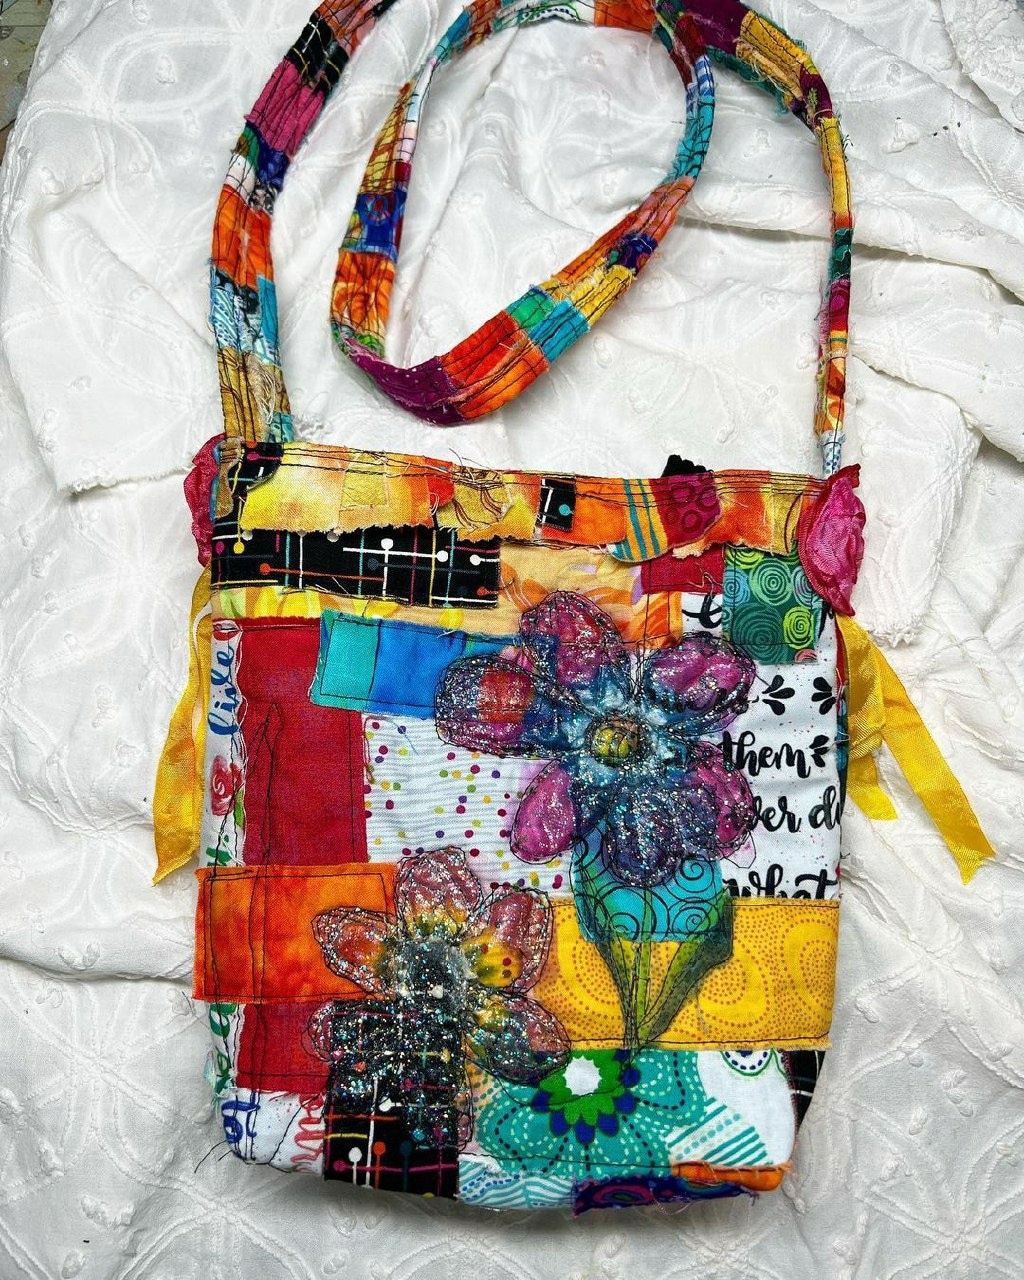 Текстильные фантазии Darlene Winter вышивка,идеи и вдохновение,лоскутное шитье,мастерство,творчество